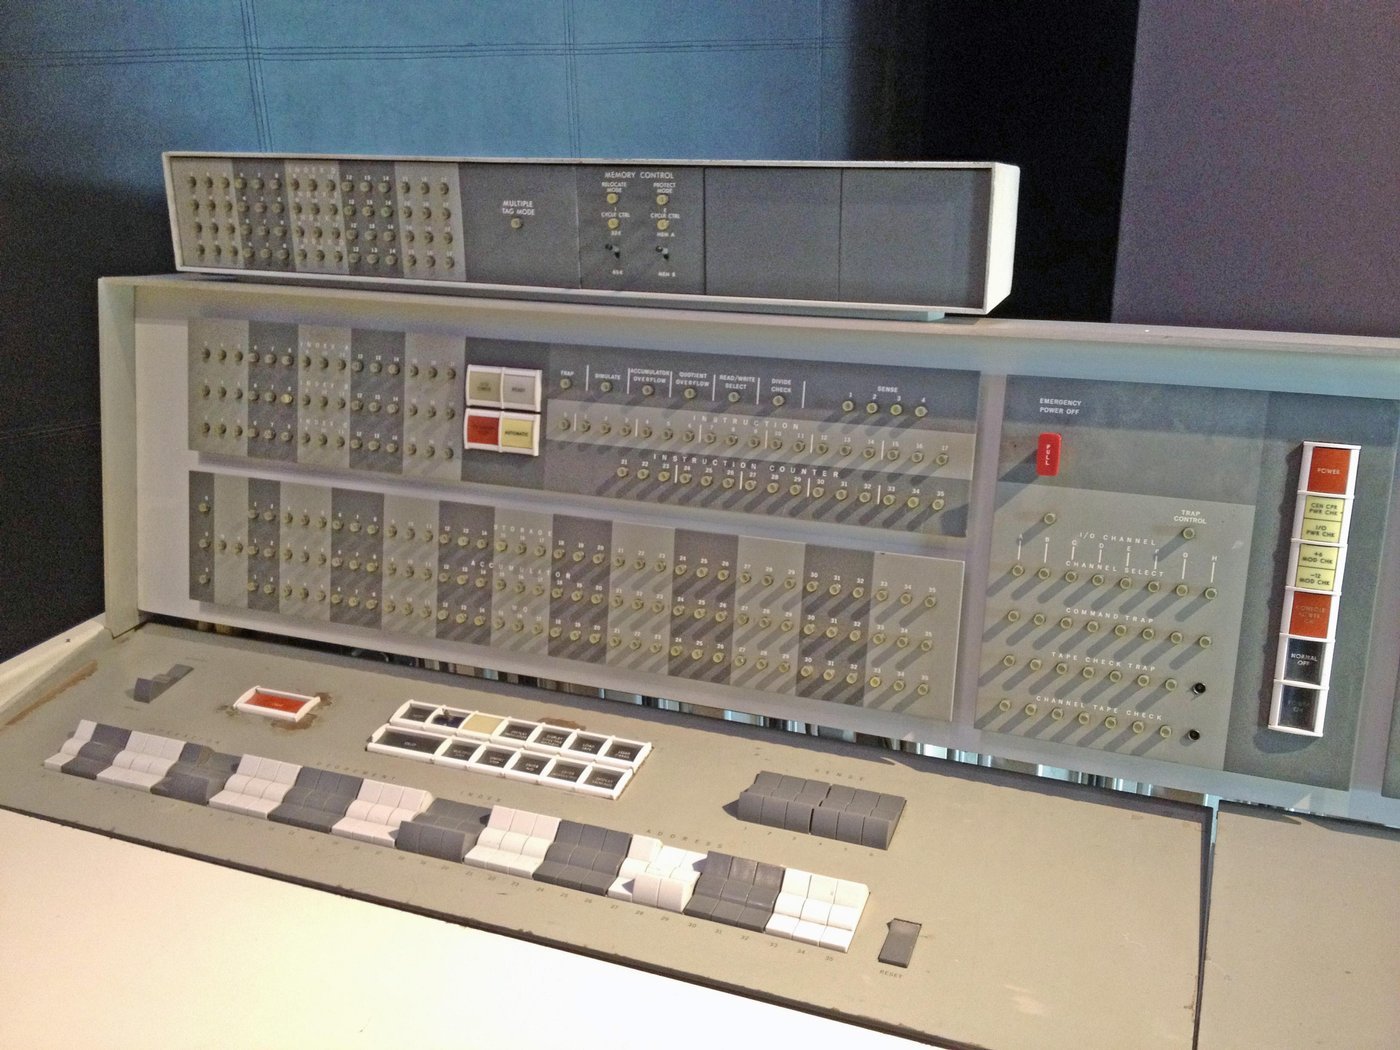 Пульт оператора IBM 7094. Youtube в соседнем окне не посмотришь 🙁